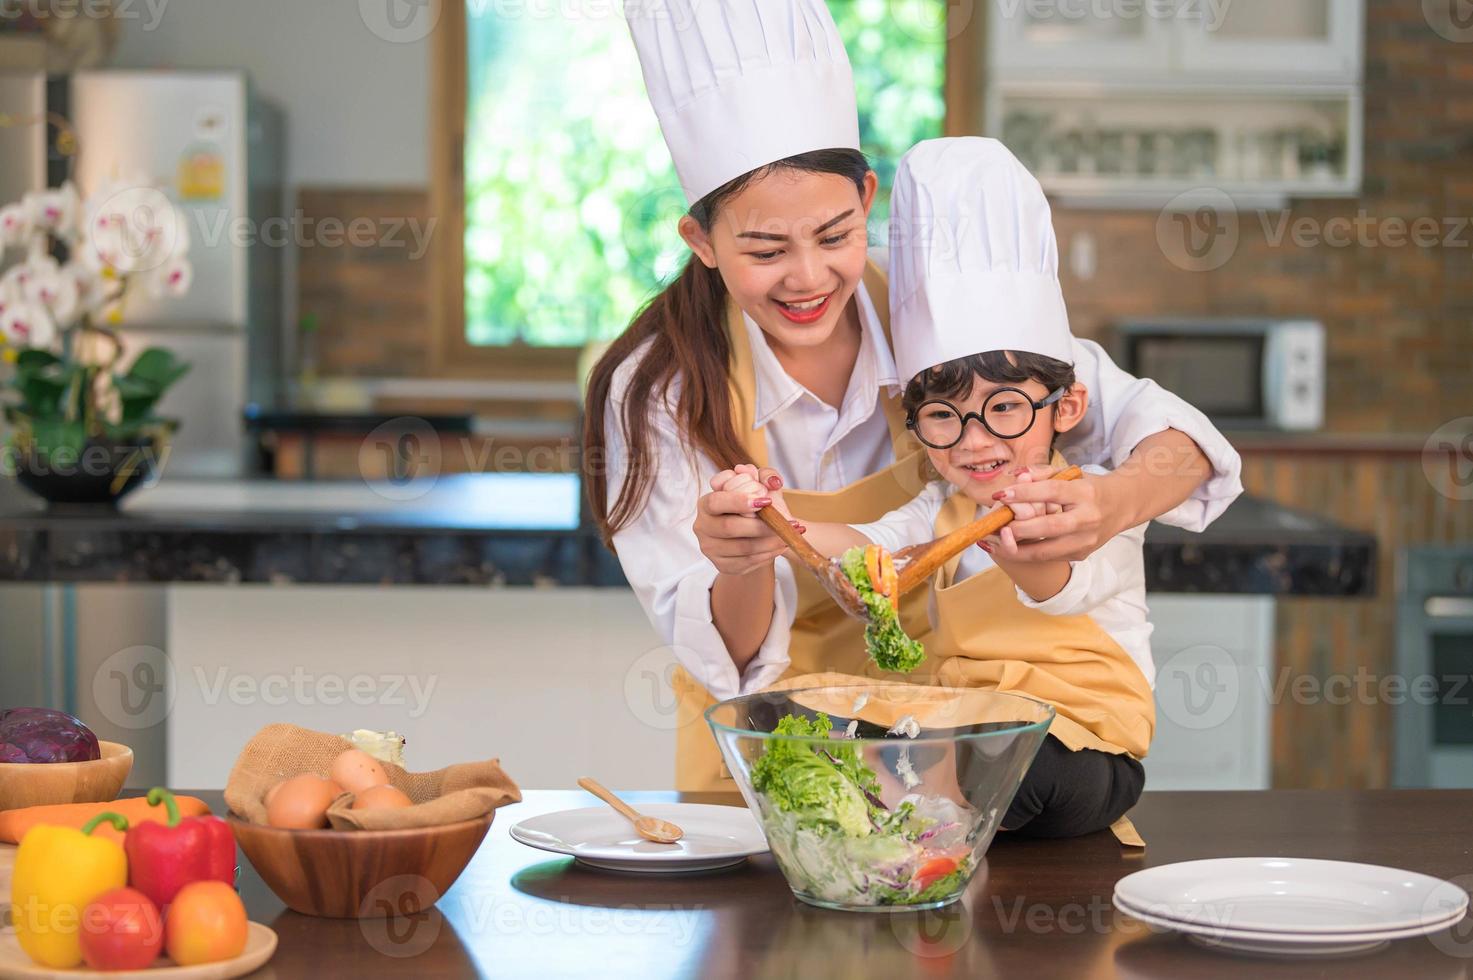 felice bella donna asiatica e simpatico ragazzino con gli occhiali si preparano a cucinare in cucina a casa. stili di vita delle persone e della famiglia. concetto di cibo e ingredienti fatti in casa. due persone tailandesi vita foto